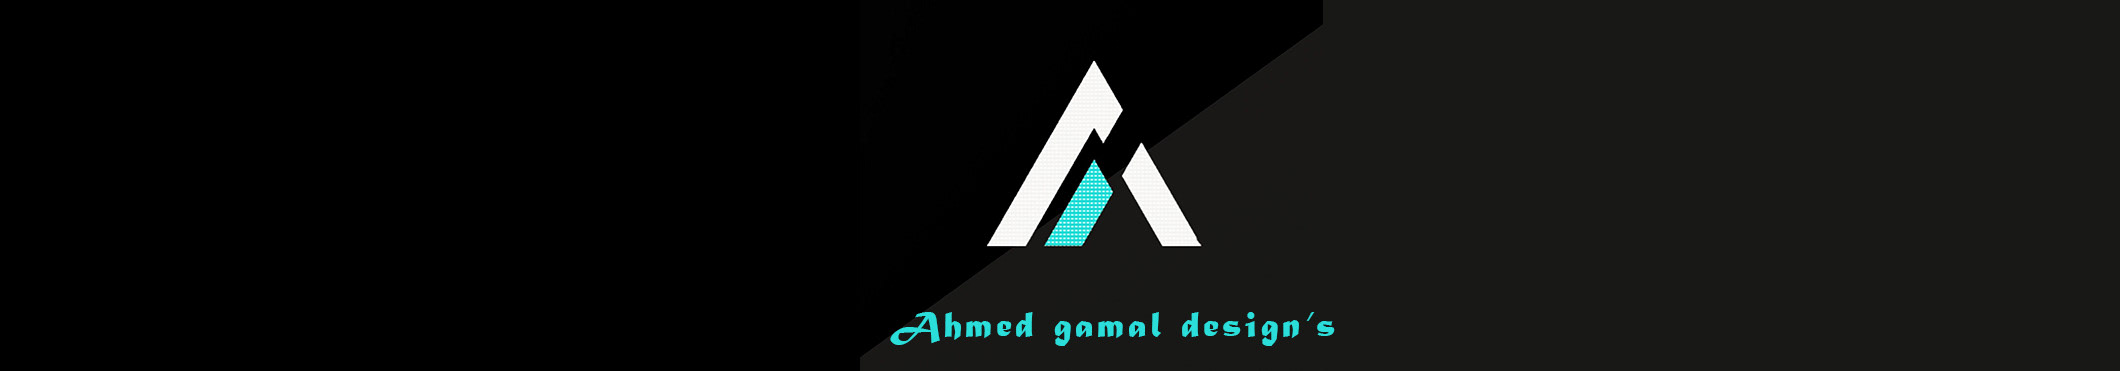 Ahmed M.Gamal profil başlığı